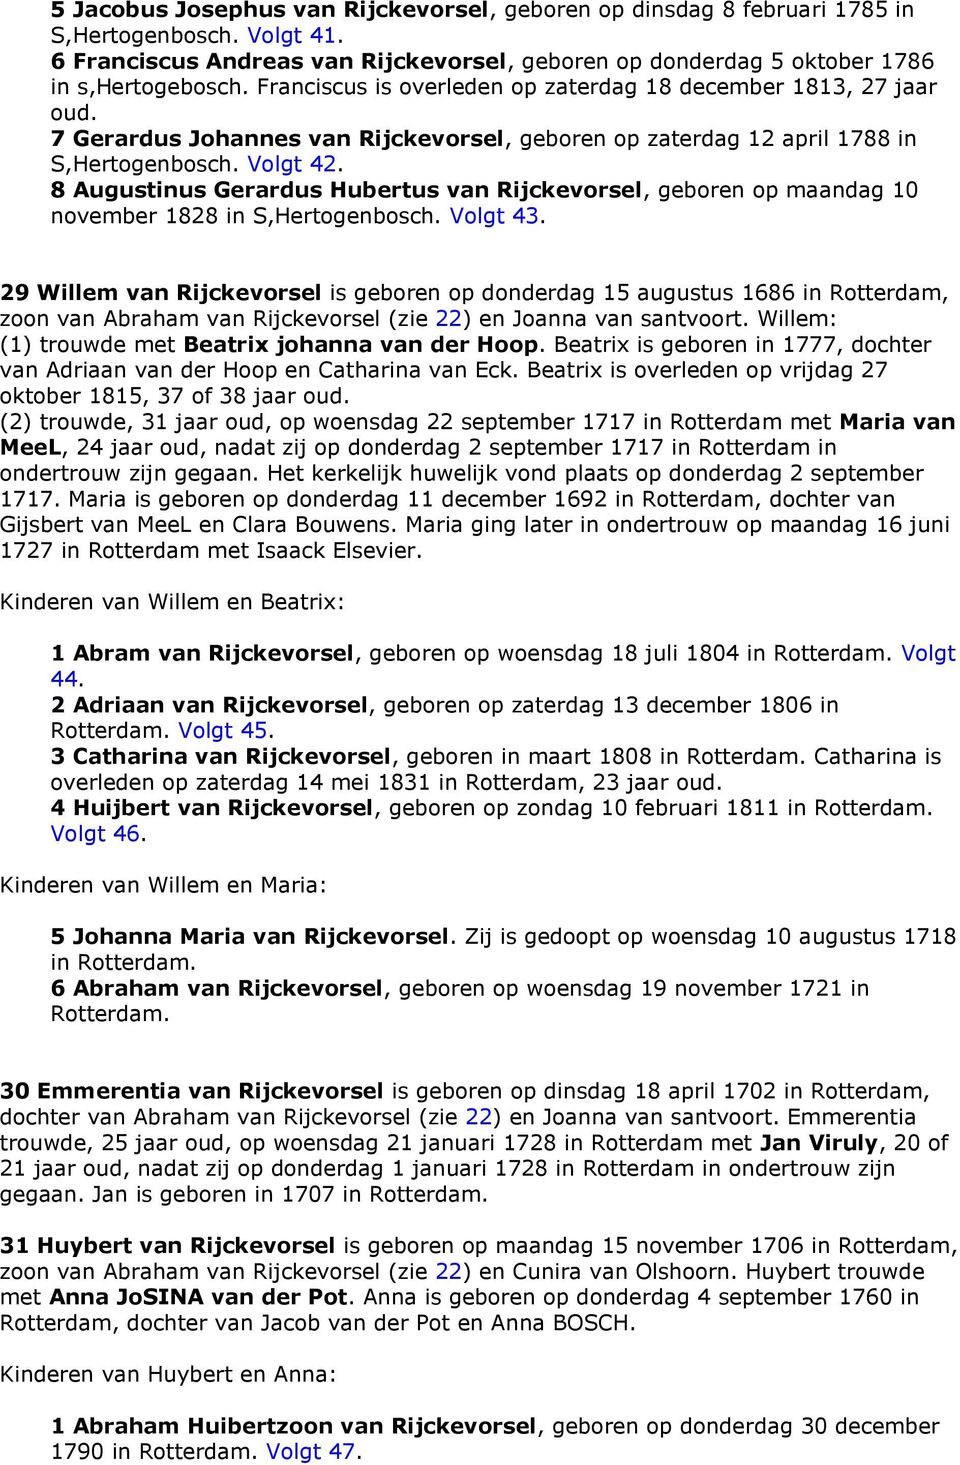 8 Augustinus Gerardus Hubertus van Rijckevorsel, geboren op maandag 10 november 1828 in S,Hertogenbosch. Volgt 43.